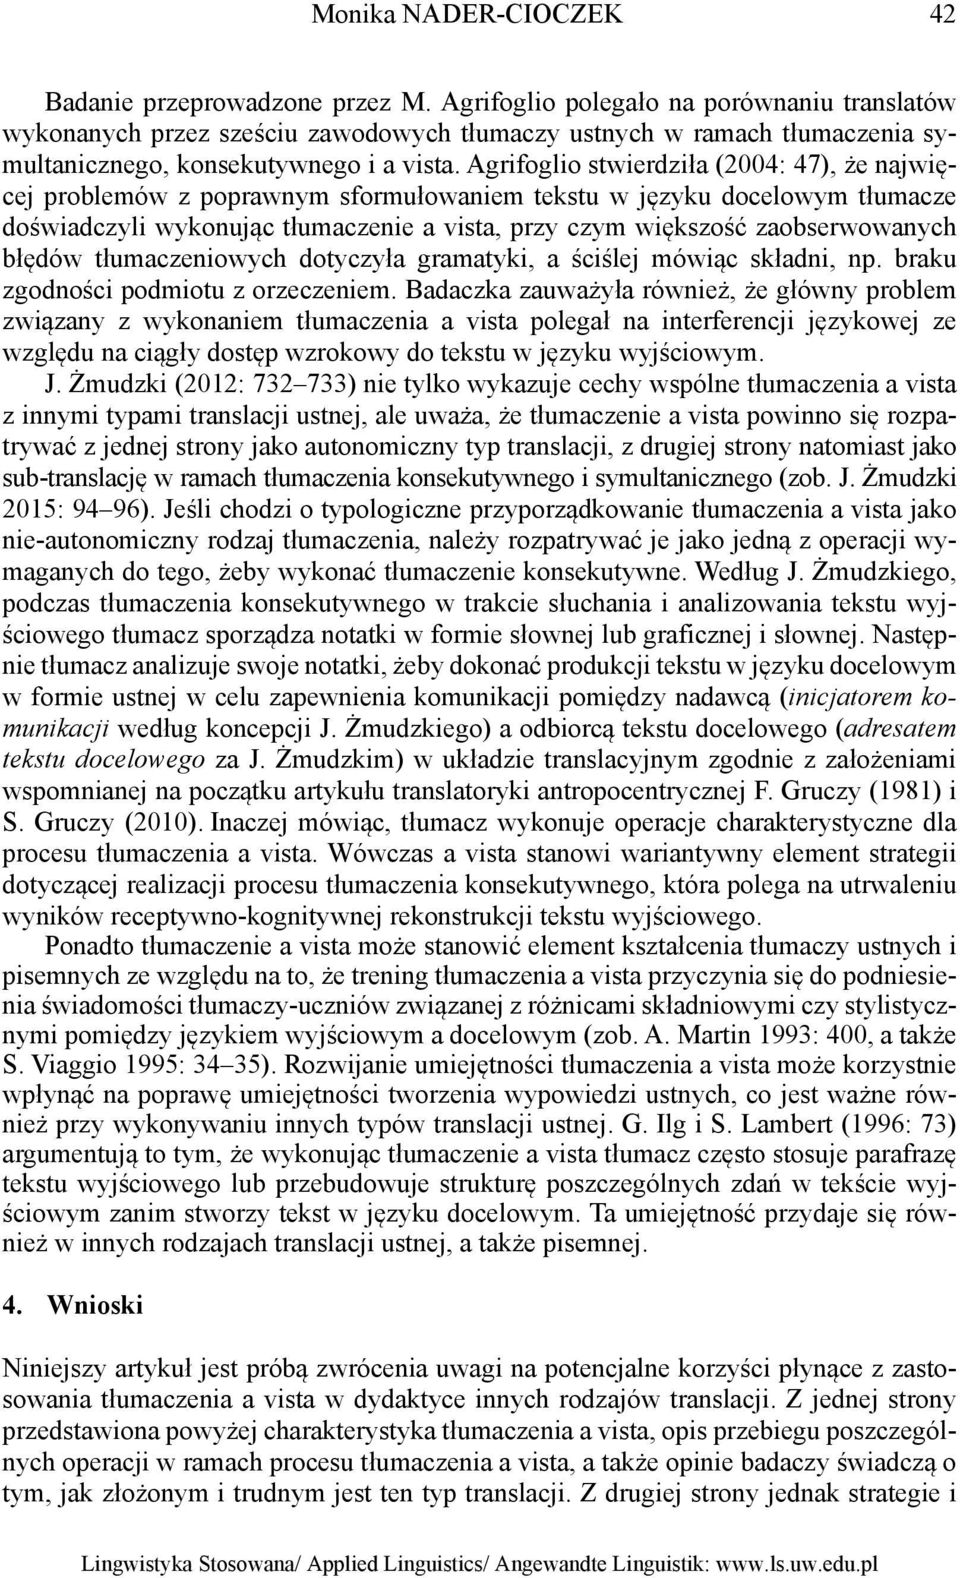 Agrifoglio stwierdziła (2004: 47), że najwięcej problemów z poprawnym sformułowaniem tekstu w języku docelowym tłumacze doświadczyli wykonując tłumaczenie a vista, przy czym większość zaobserwowanych